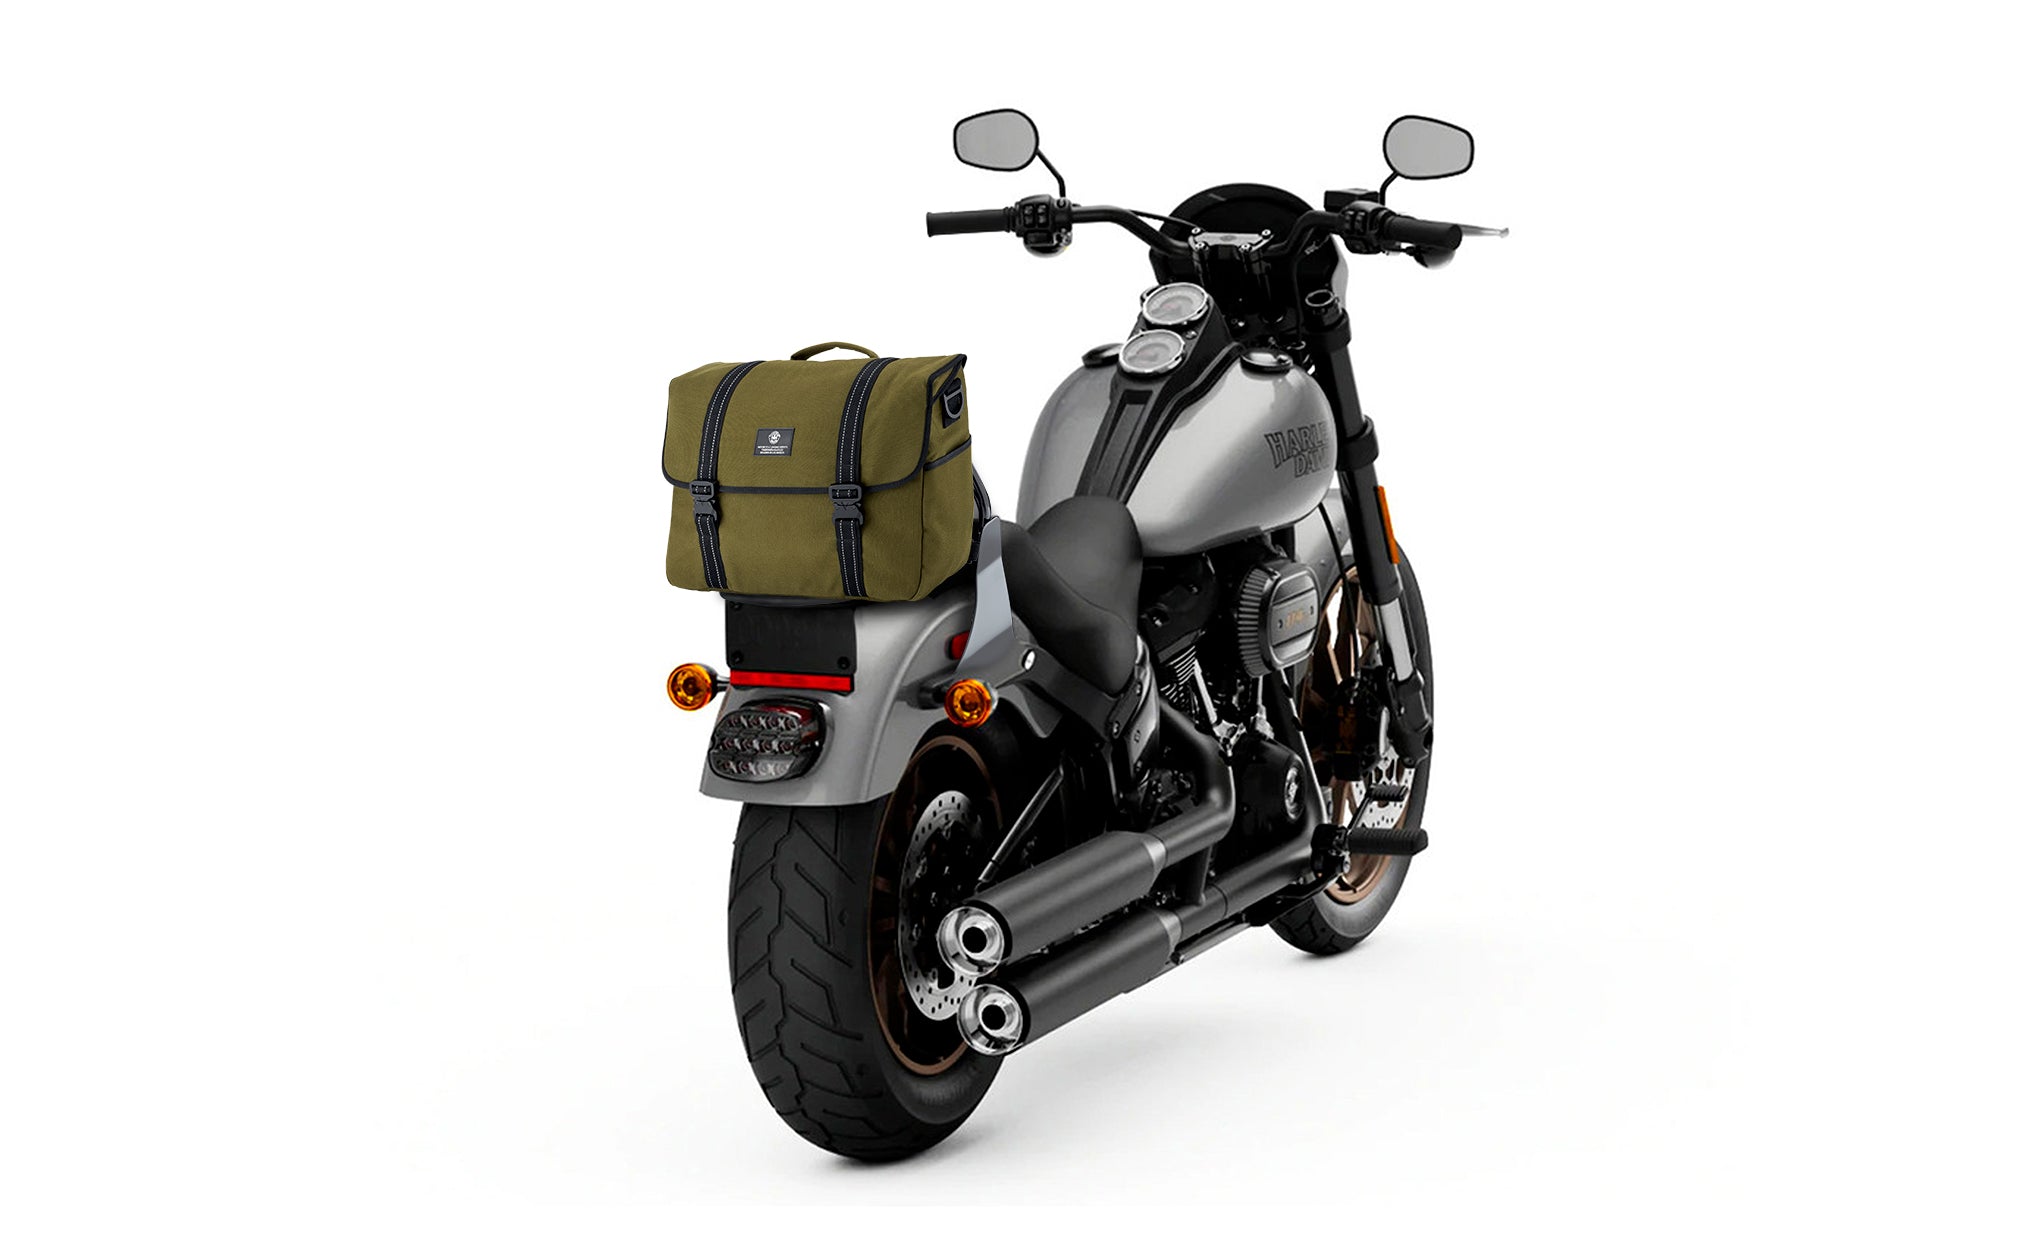 Viking Duo-tone Medium Yamaha Motorcycle Messenger Bag Green/Black Bag on Bike View @expand